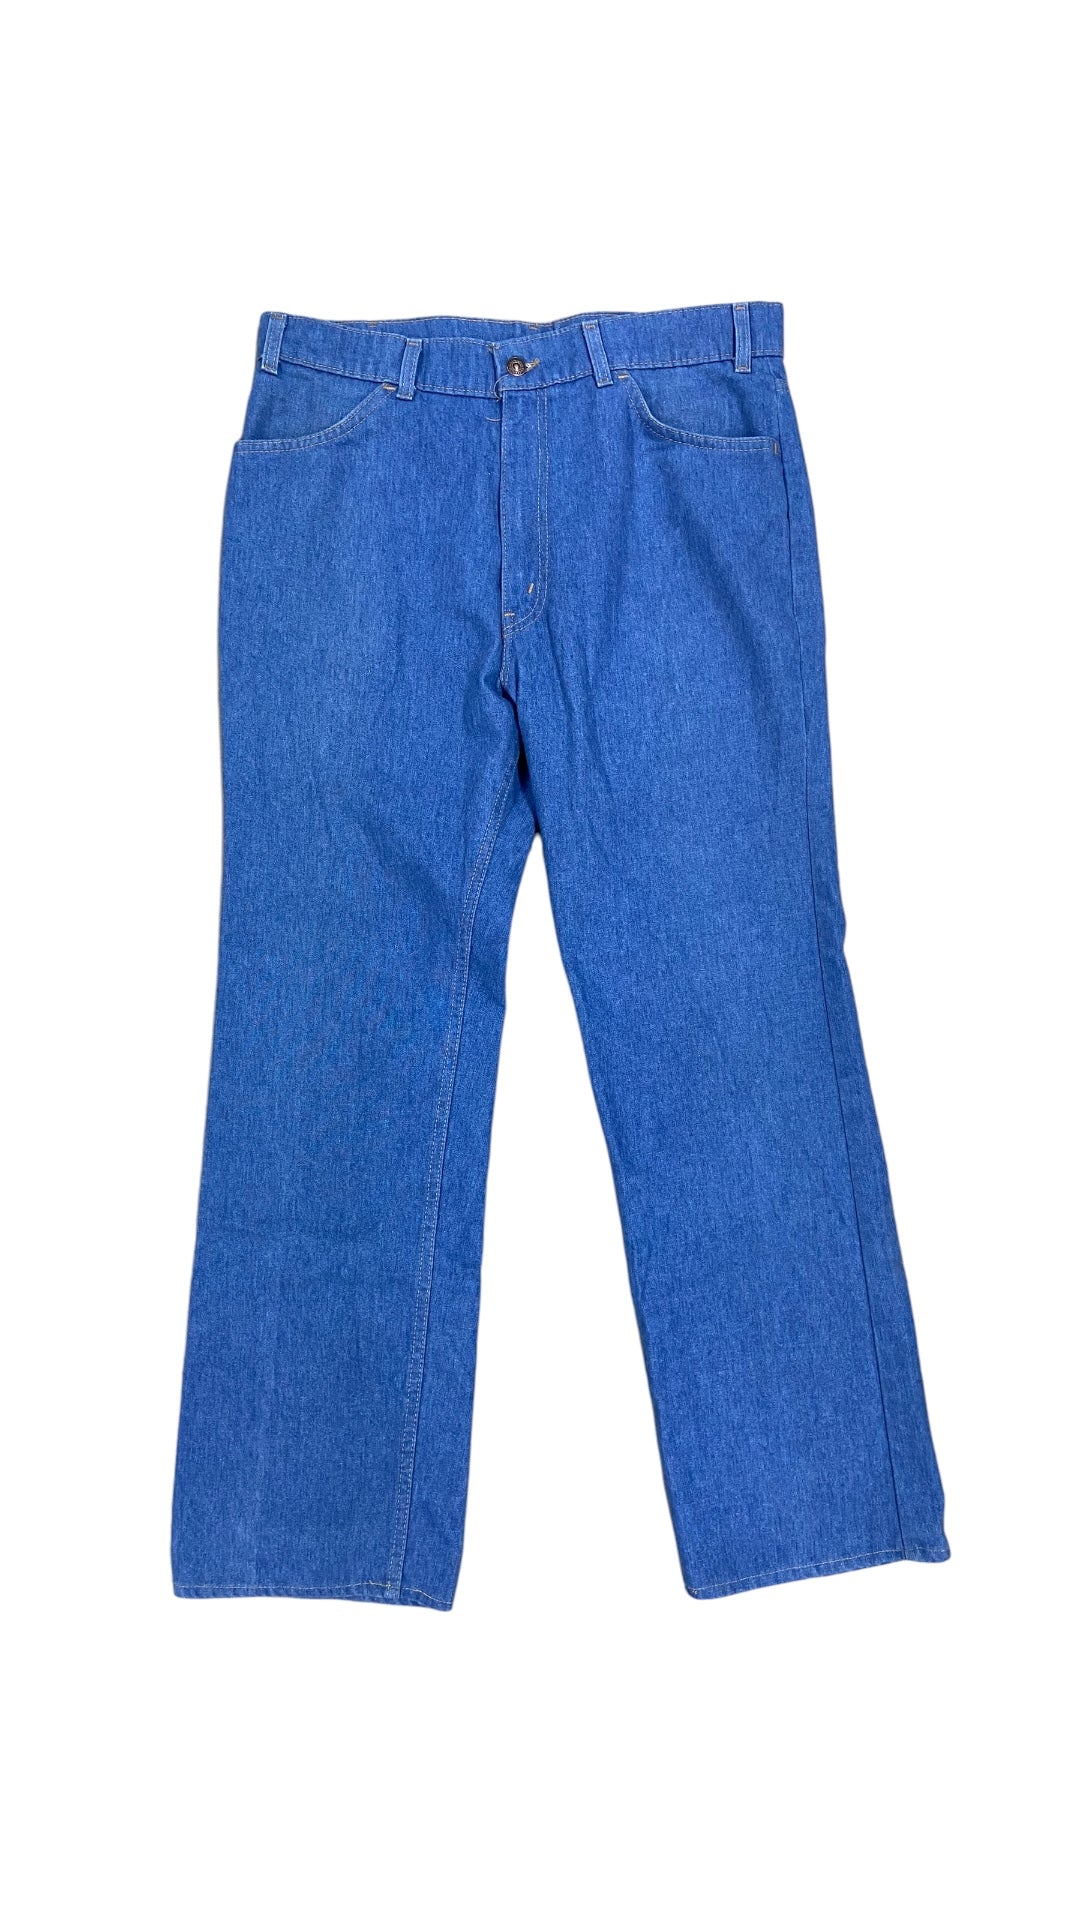 VTG Levi's Orange Tab Blue Jeans Sz 36x30